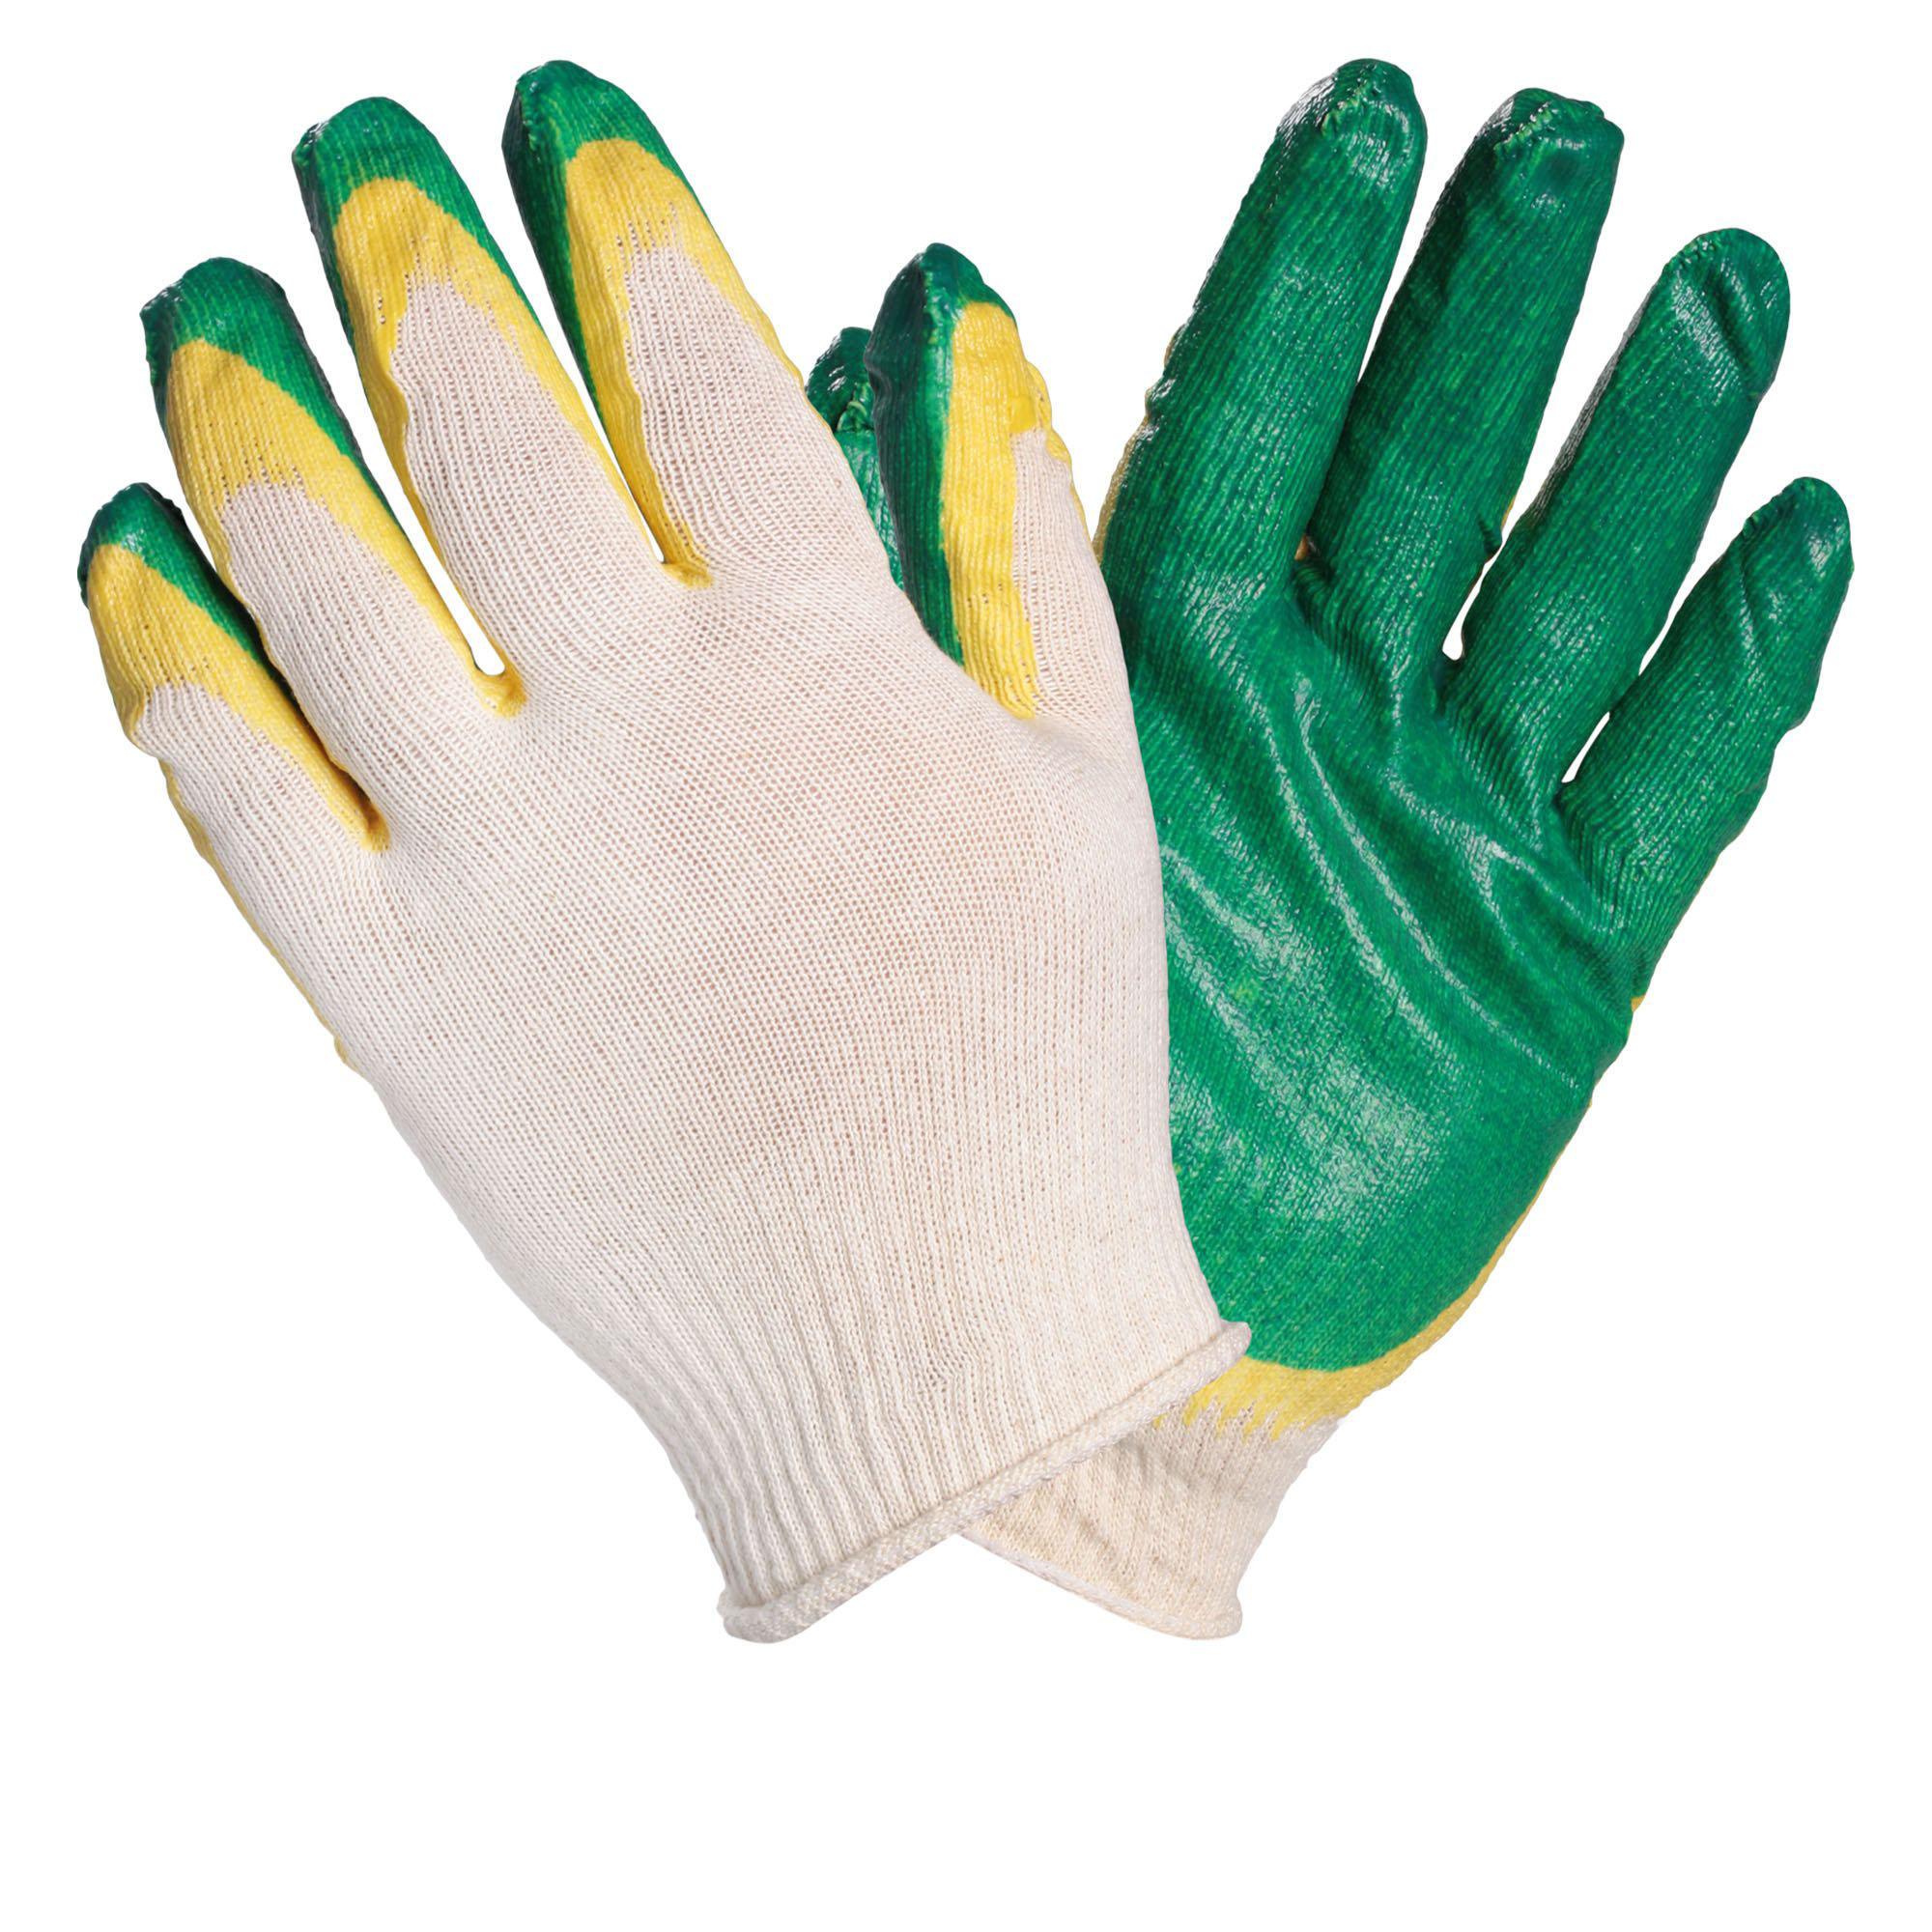 airline awgs14 перчатки козья кожа комбинированные натур кожа хлопок xl оранж сер AIRLINE AWGC08 Перчатки ХБ с двойным латексным покрытием ладони, зеленые (1 пара)